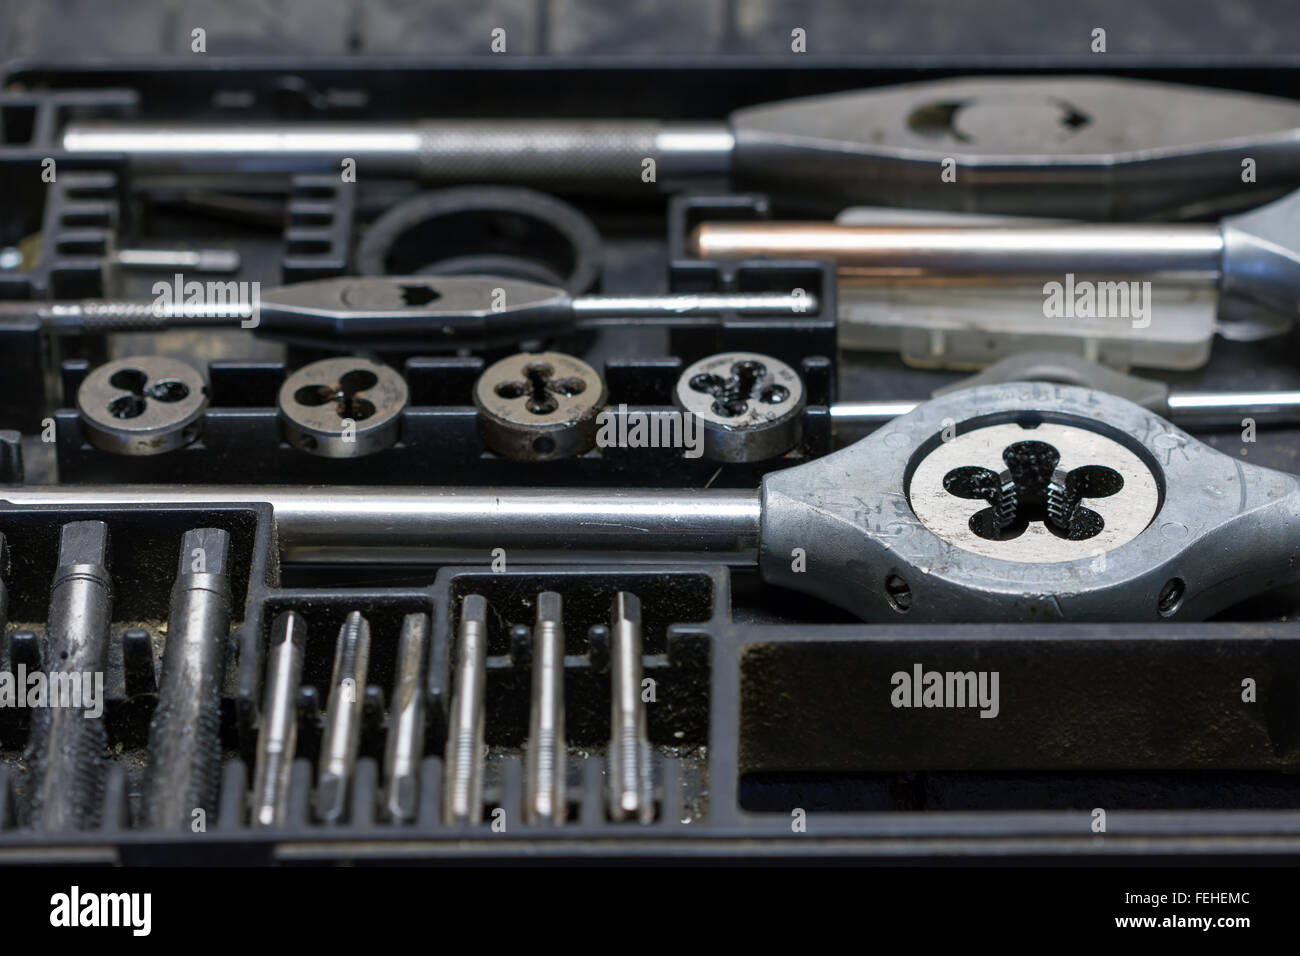 Screw taps - hand tool Stock Photo